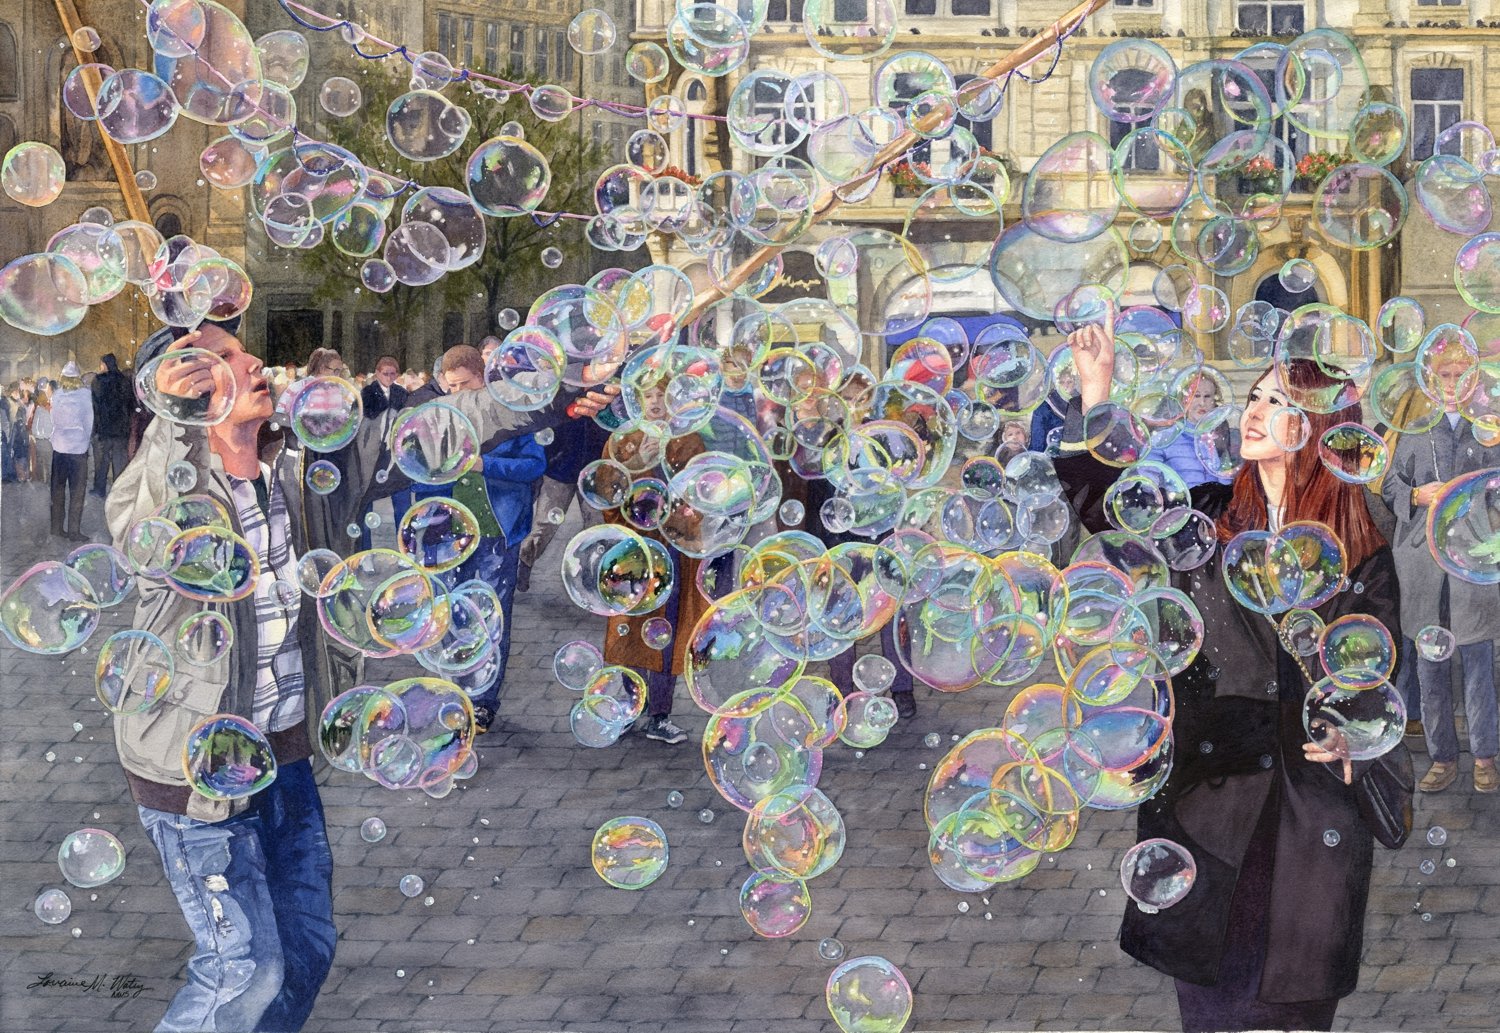 Prague-Bubble-Man-watercolor-by-Lorraine-Watry.jpg